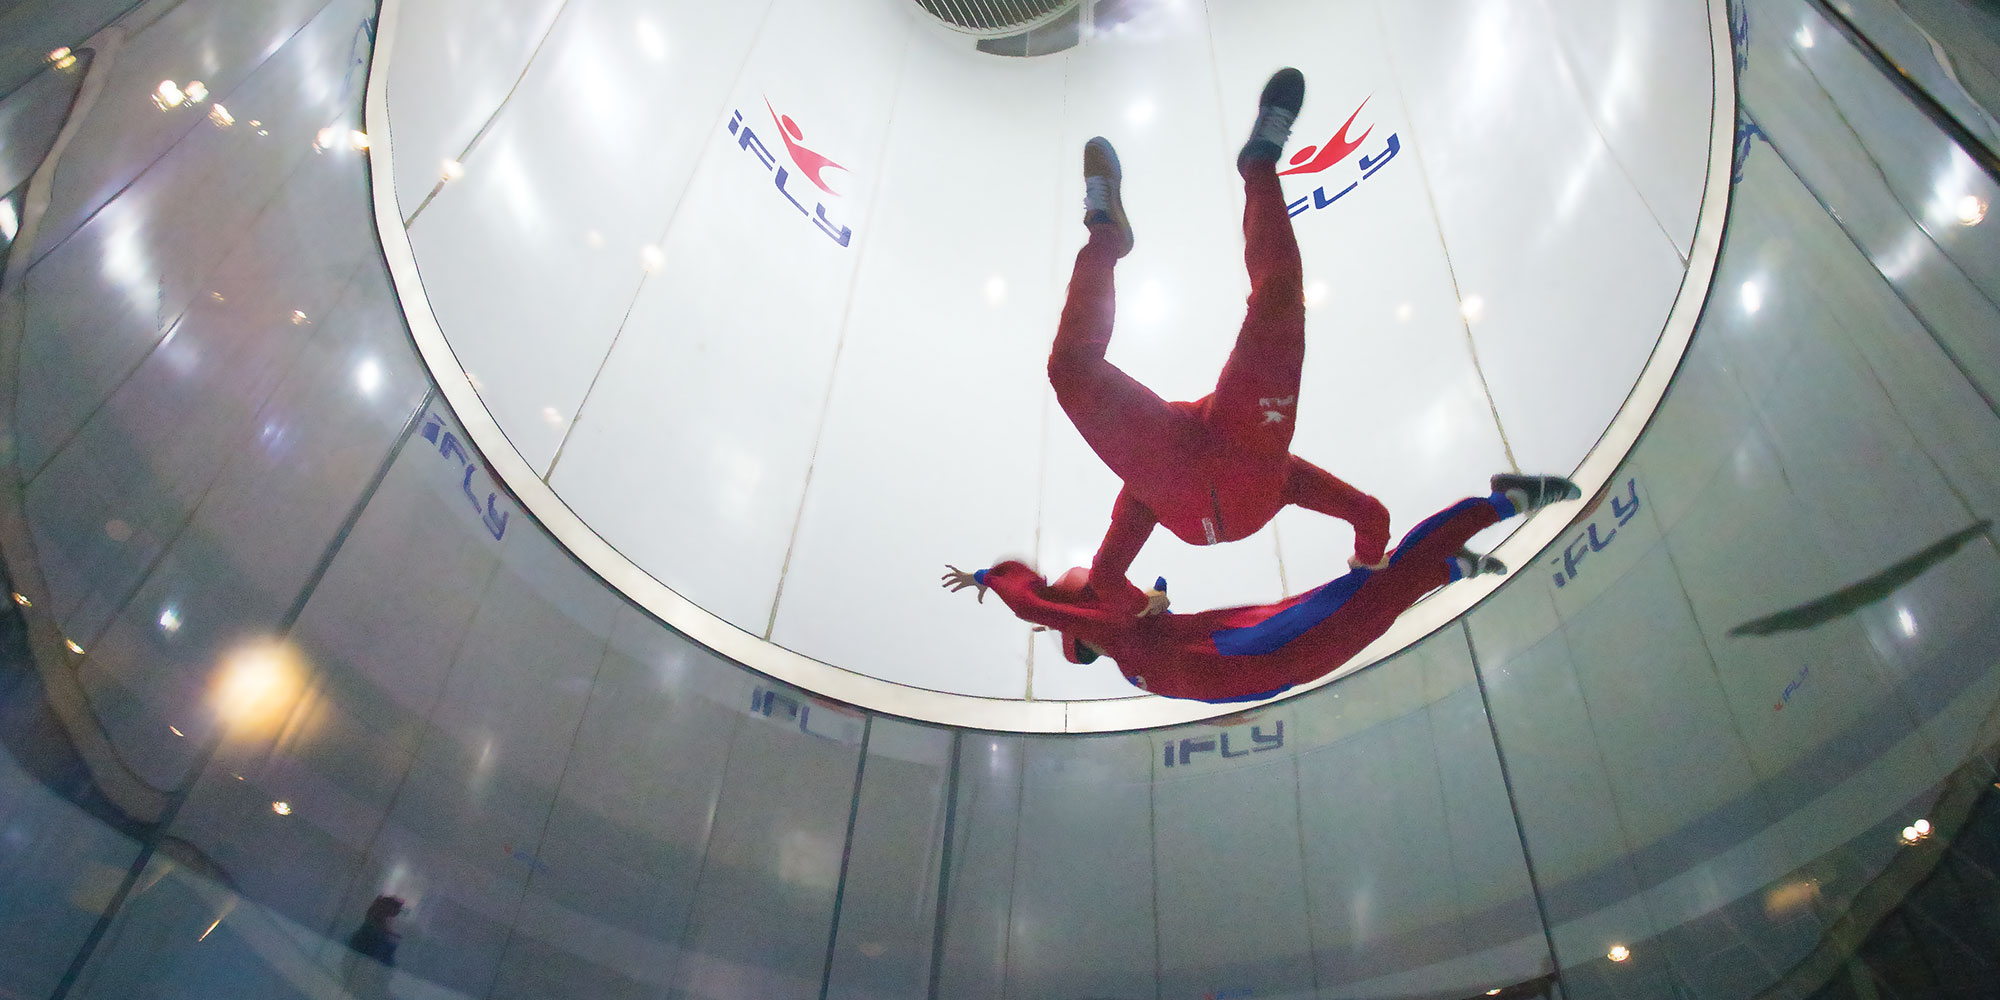 Indoor Activities: indoor skydiving at iFly Tampa